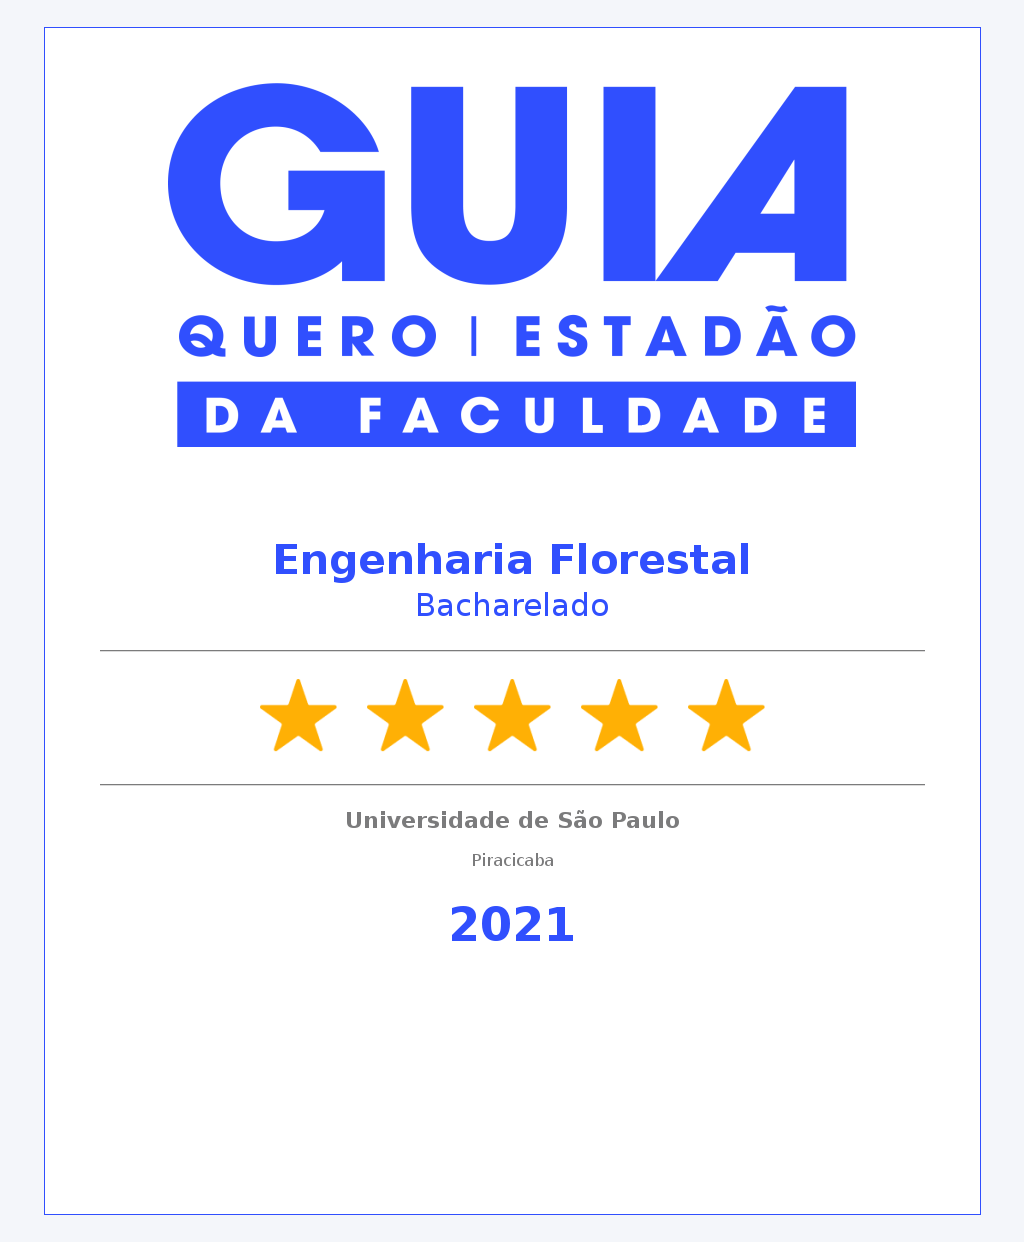 Guia da Faculdade do Estadão - 2021 - 5 Estrelas